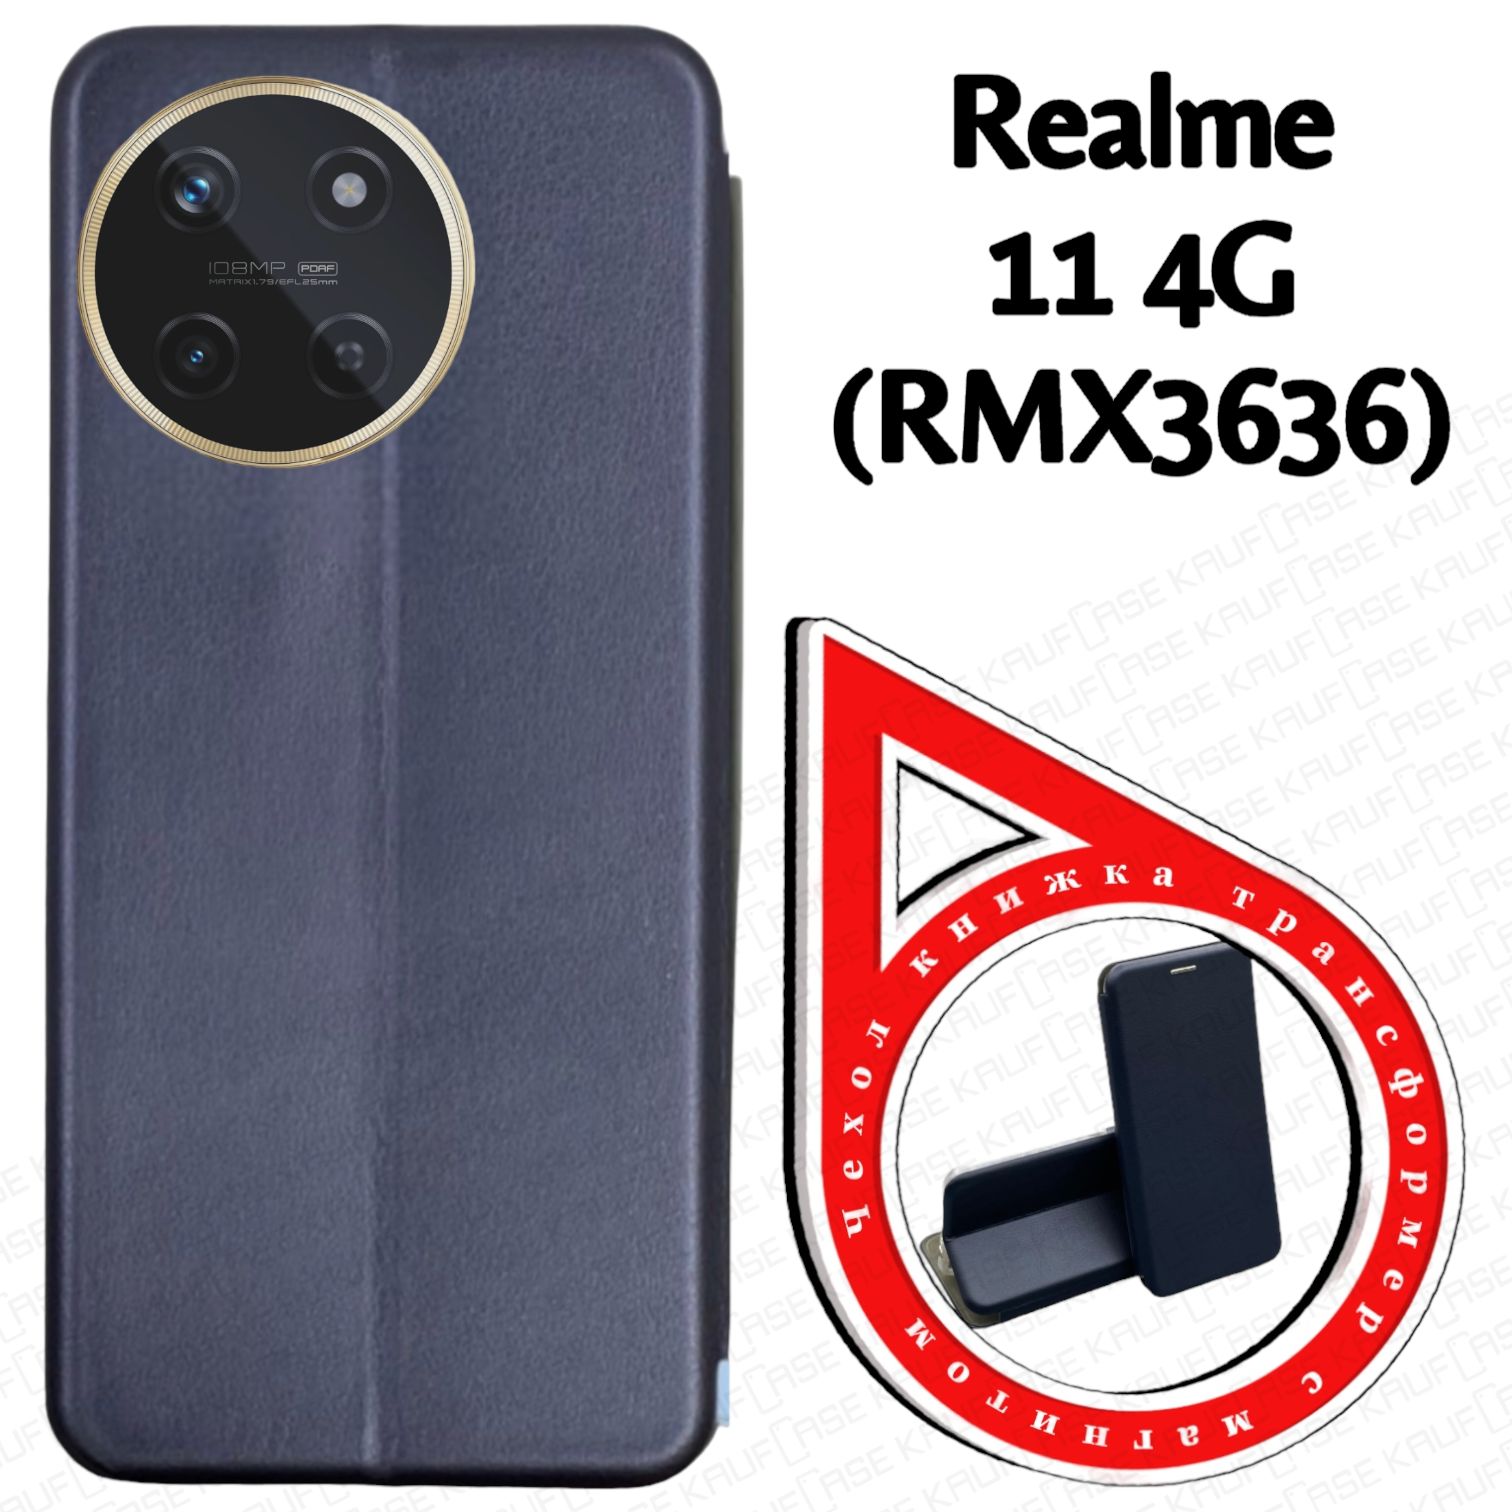 ЧехолкнижкадлятелефонаRealme114G(RMX3636)(6.4"),темно-синий.Текстураподкожу